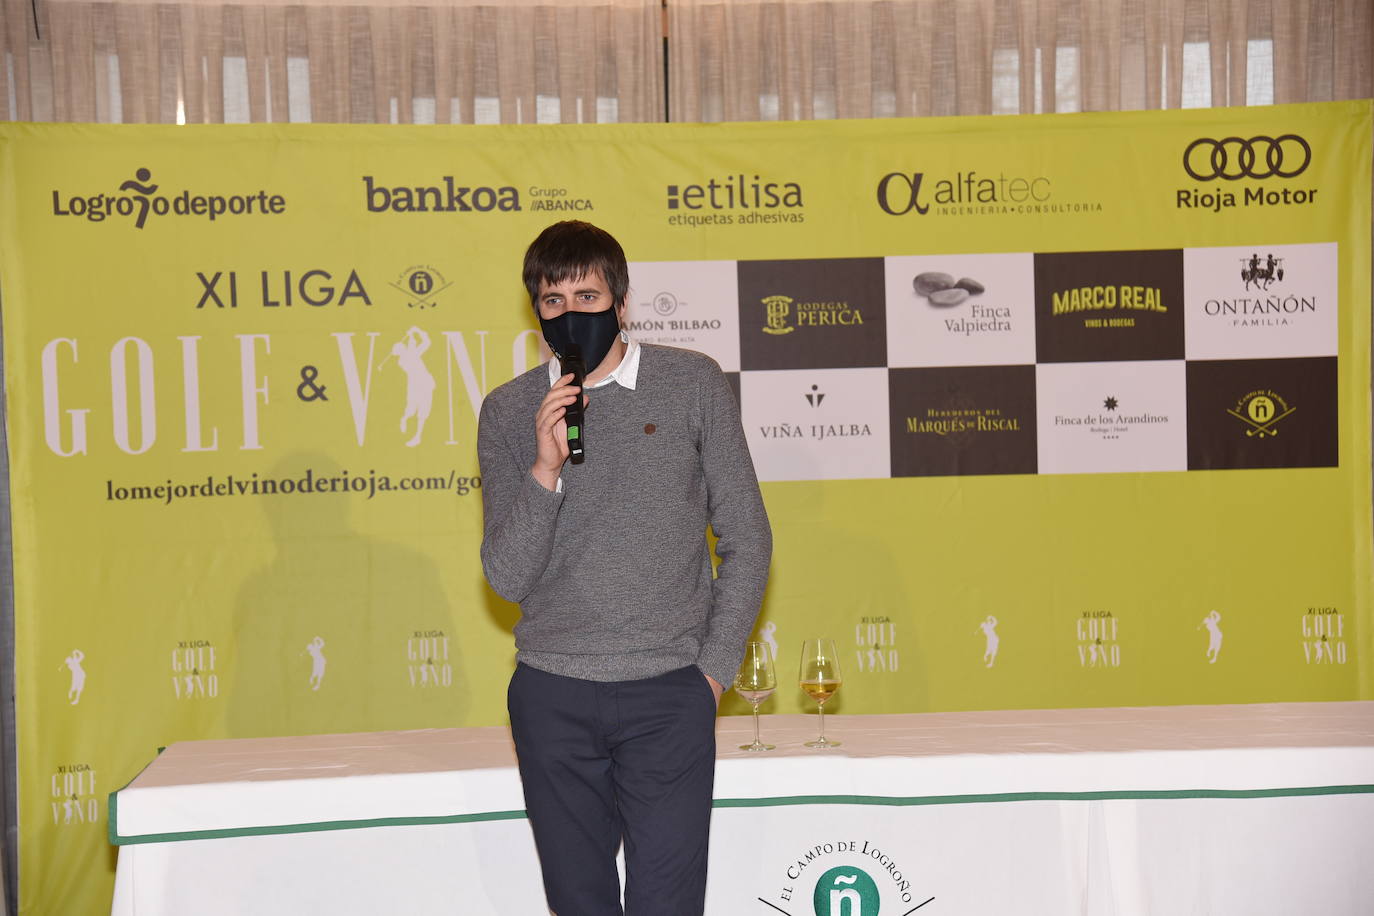 Entrega de premios a los ganadores del Torneo Viña Ijalba, de la Liga de Golf y Vino.